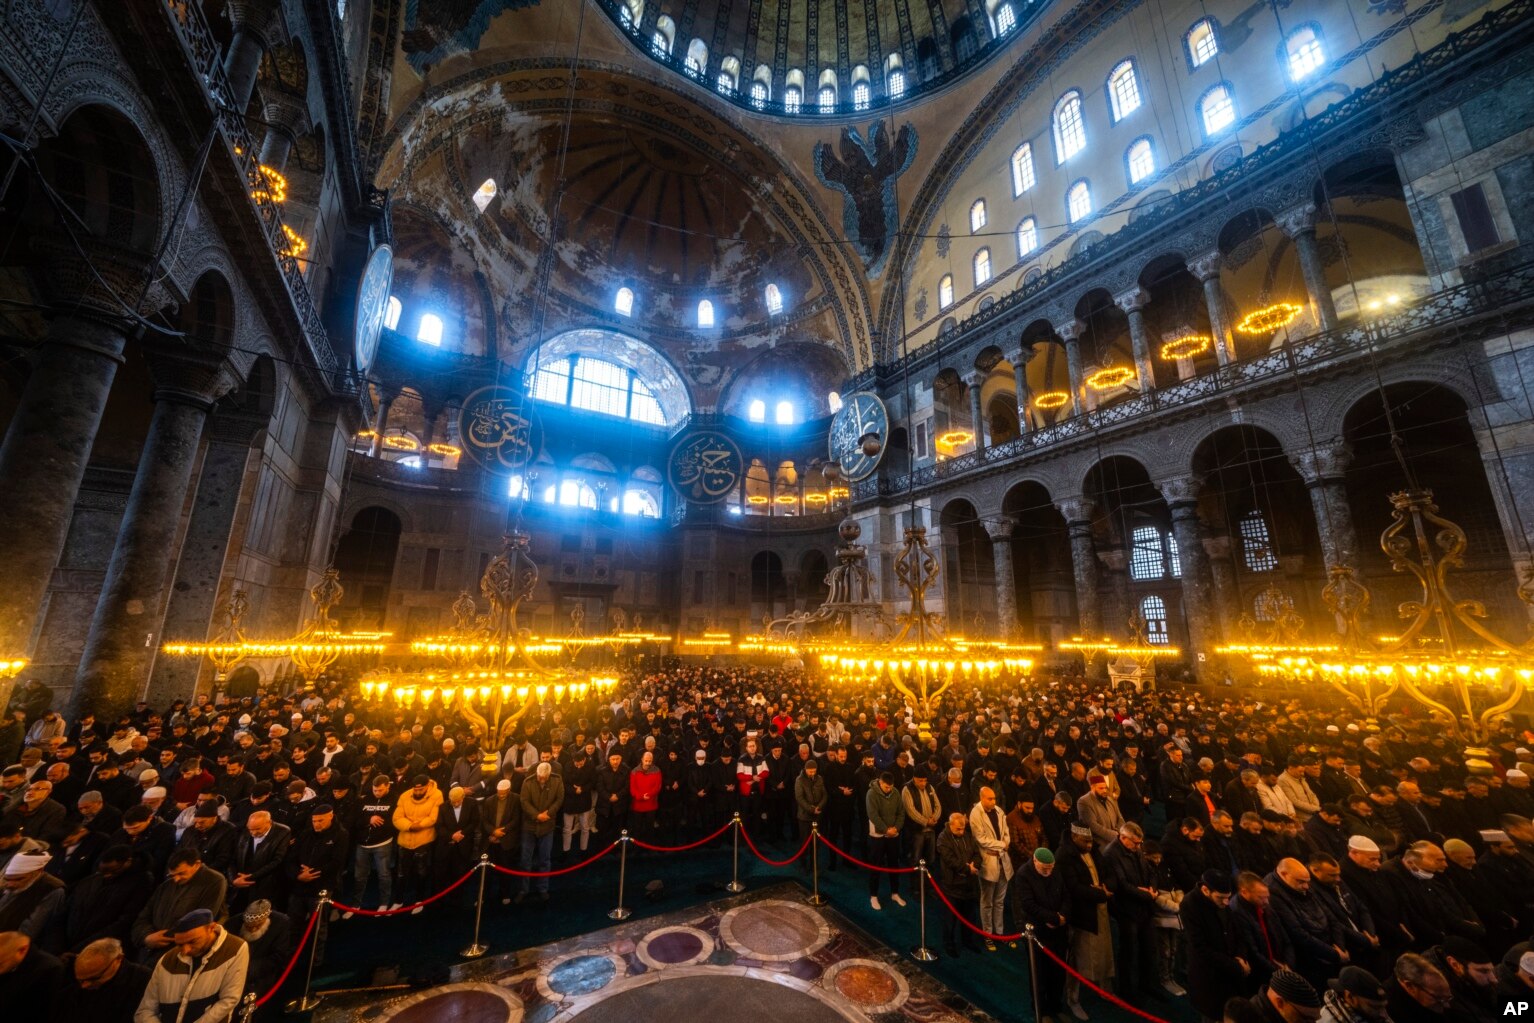 Besimtarët myslimanë duke u lutur gjatë muajit të shenjtë mysliman të Ramazanit në xhaminë Hagia Sophia në Stamboll.